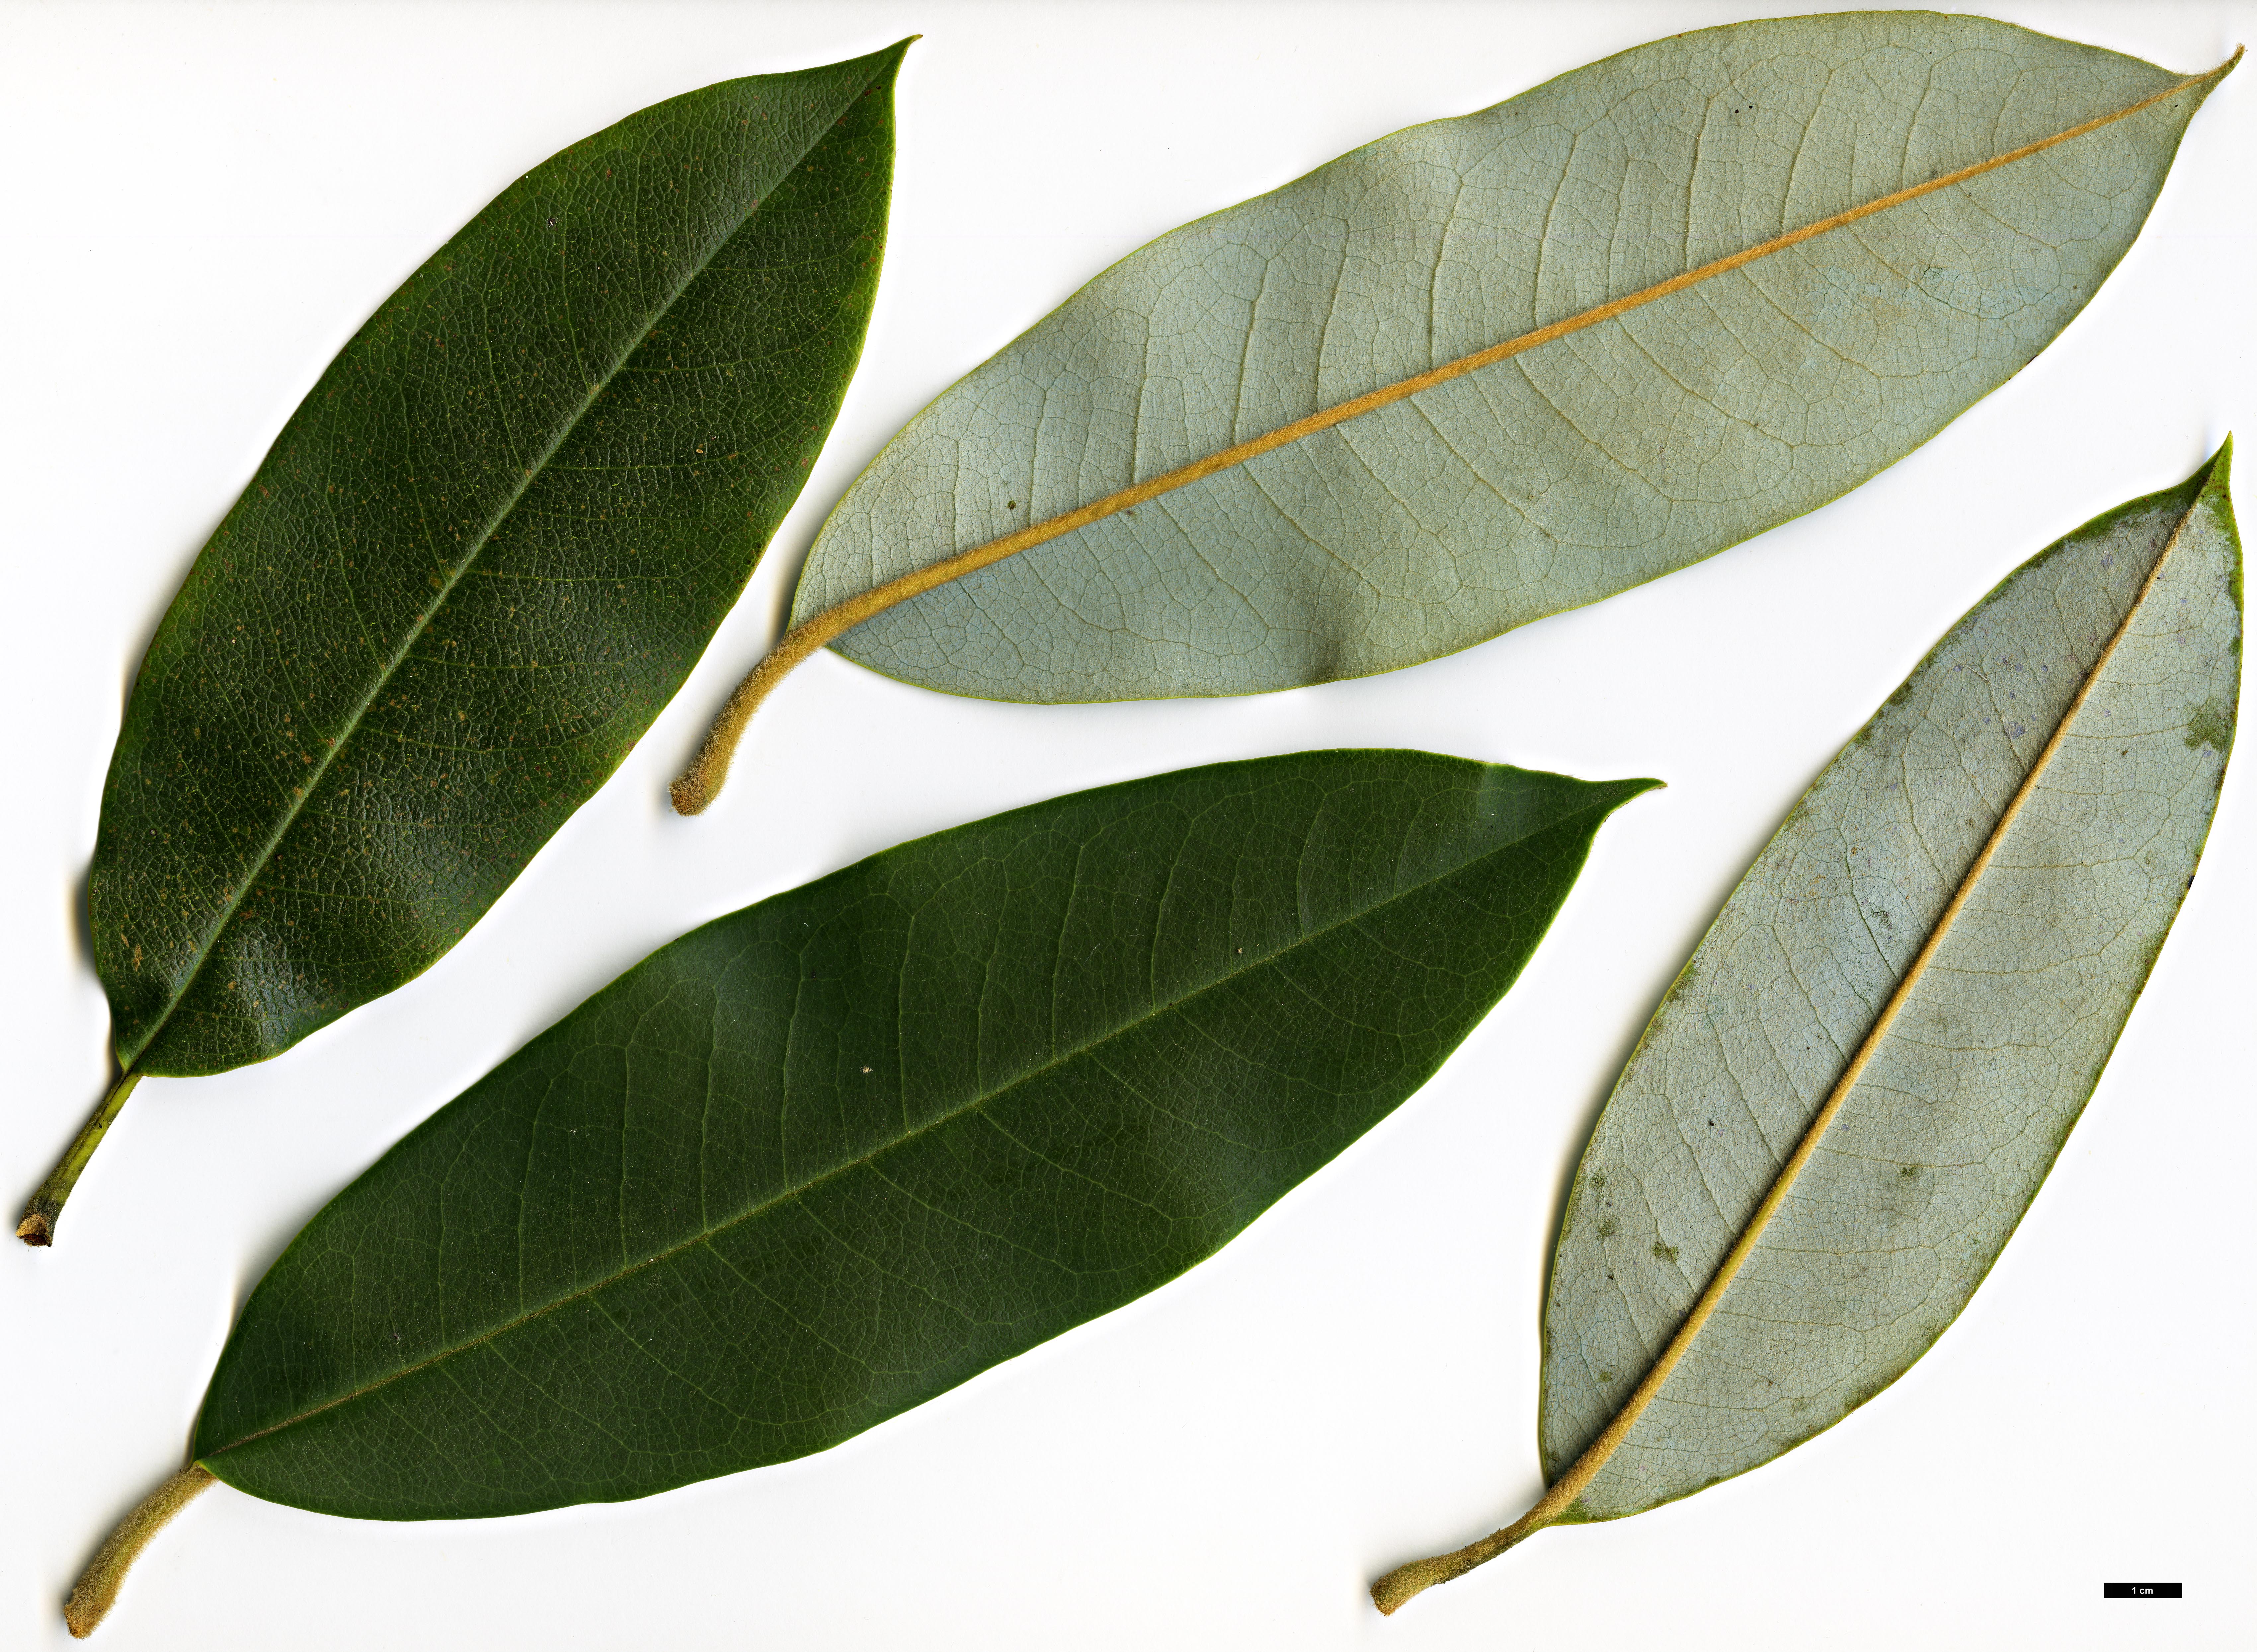 High resolution image: Family: Magnoliaceae - Genus: Magnolia - Taxon: calcicola